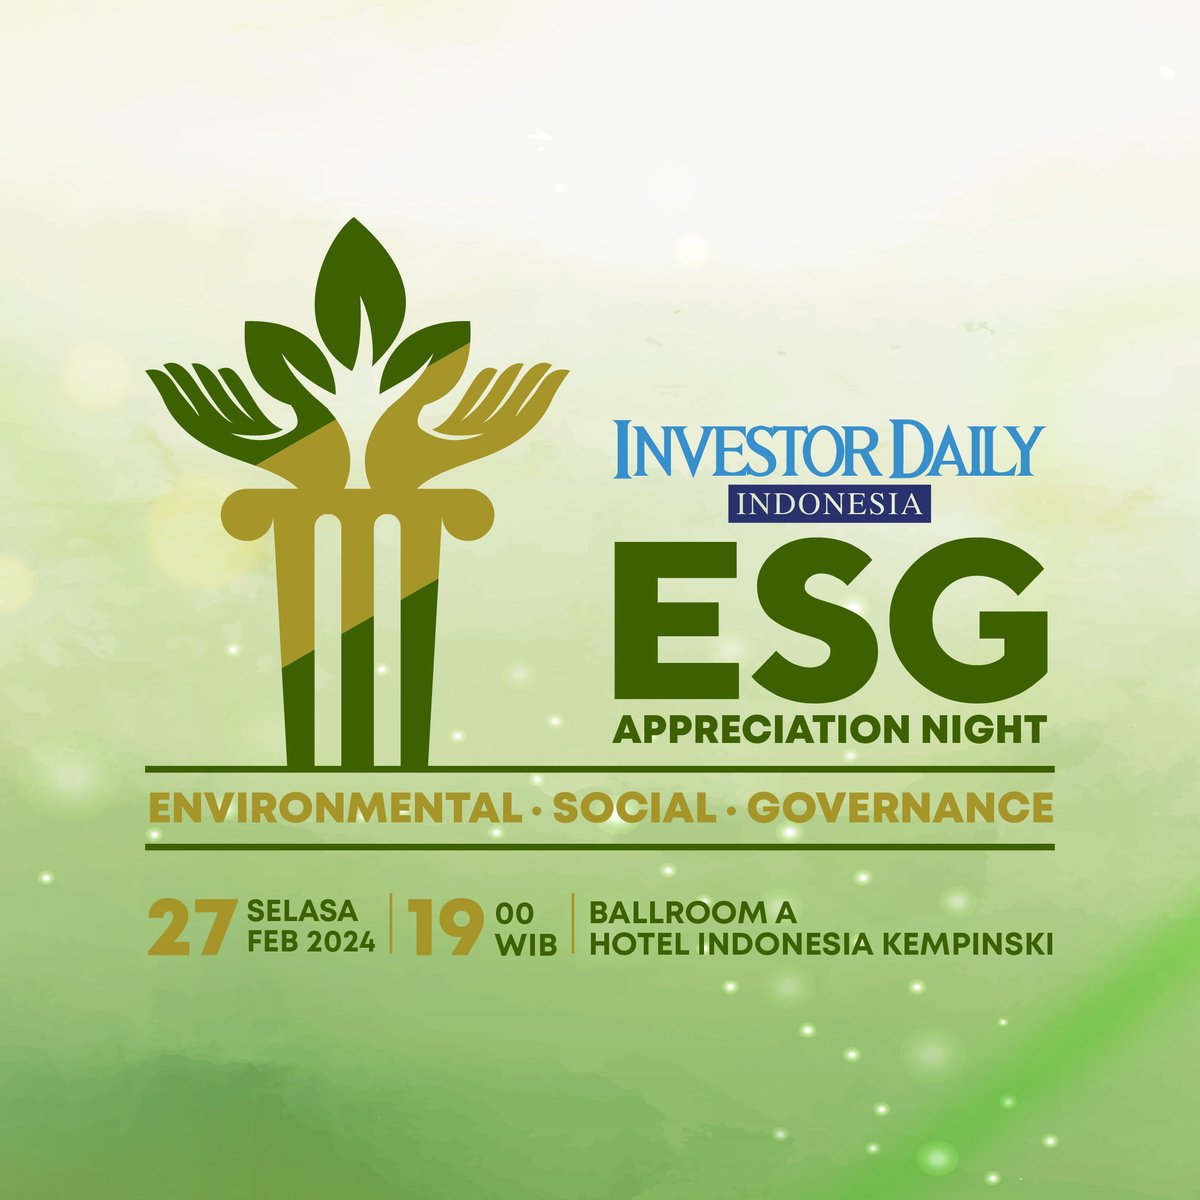 Investor Daily Indonesia menggelar ESG Awards 2024 sebagai apresiasi bagi para perusahaan yang peduli terhadap lingkungan, sosial, dan tata kelola yang baik.   

Selasa 27 Februari 2024 pukul 19.00 WIB di Hotel Indonesia Kempinski, Jakarta.  

#ESGAwards #InvestorDaily #BUniverse